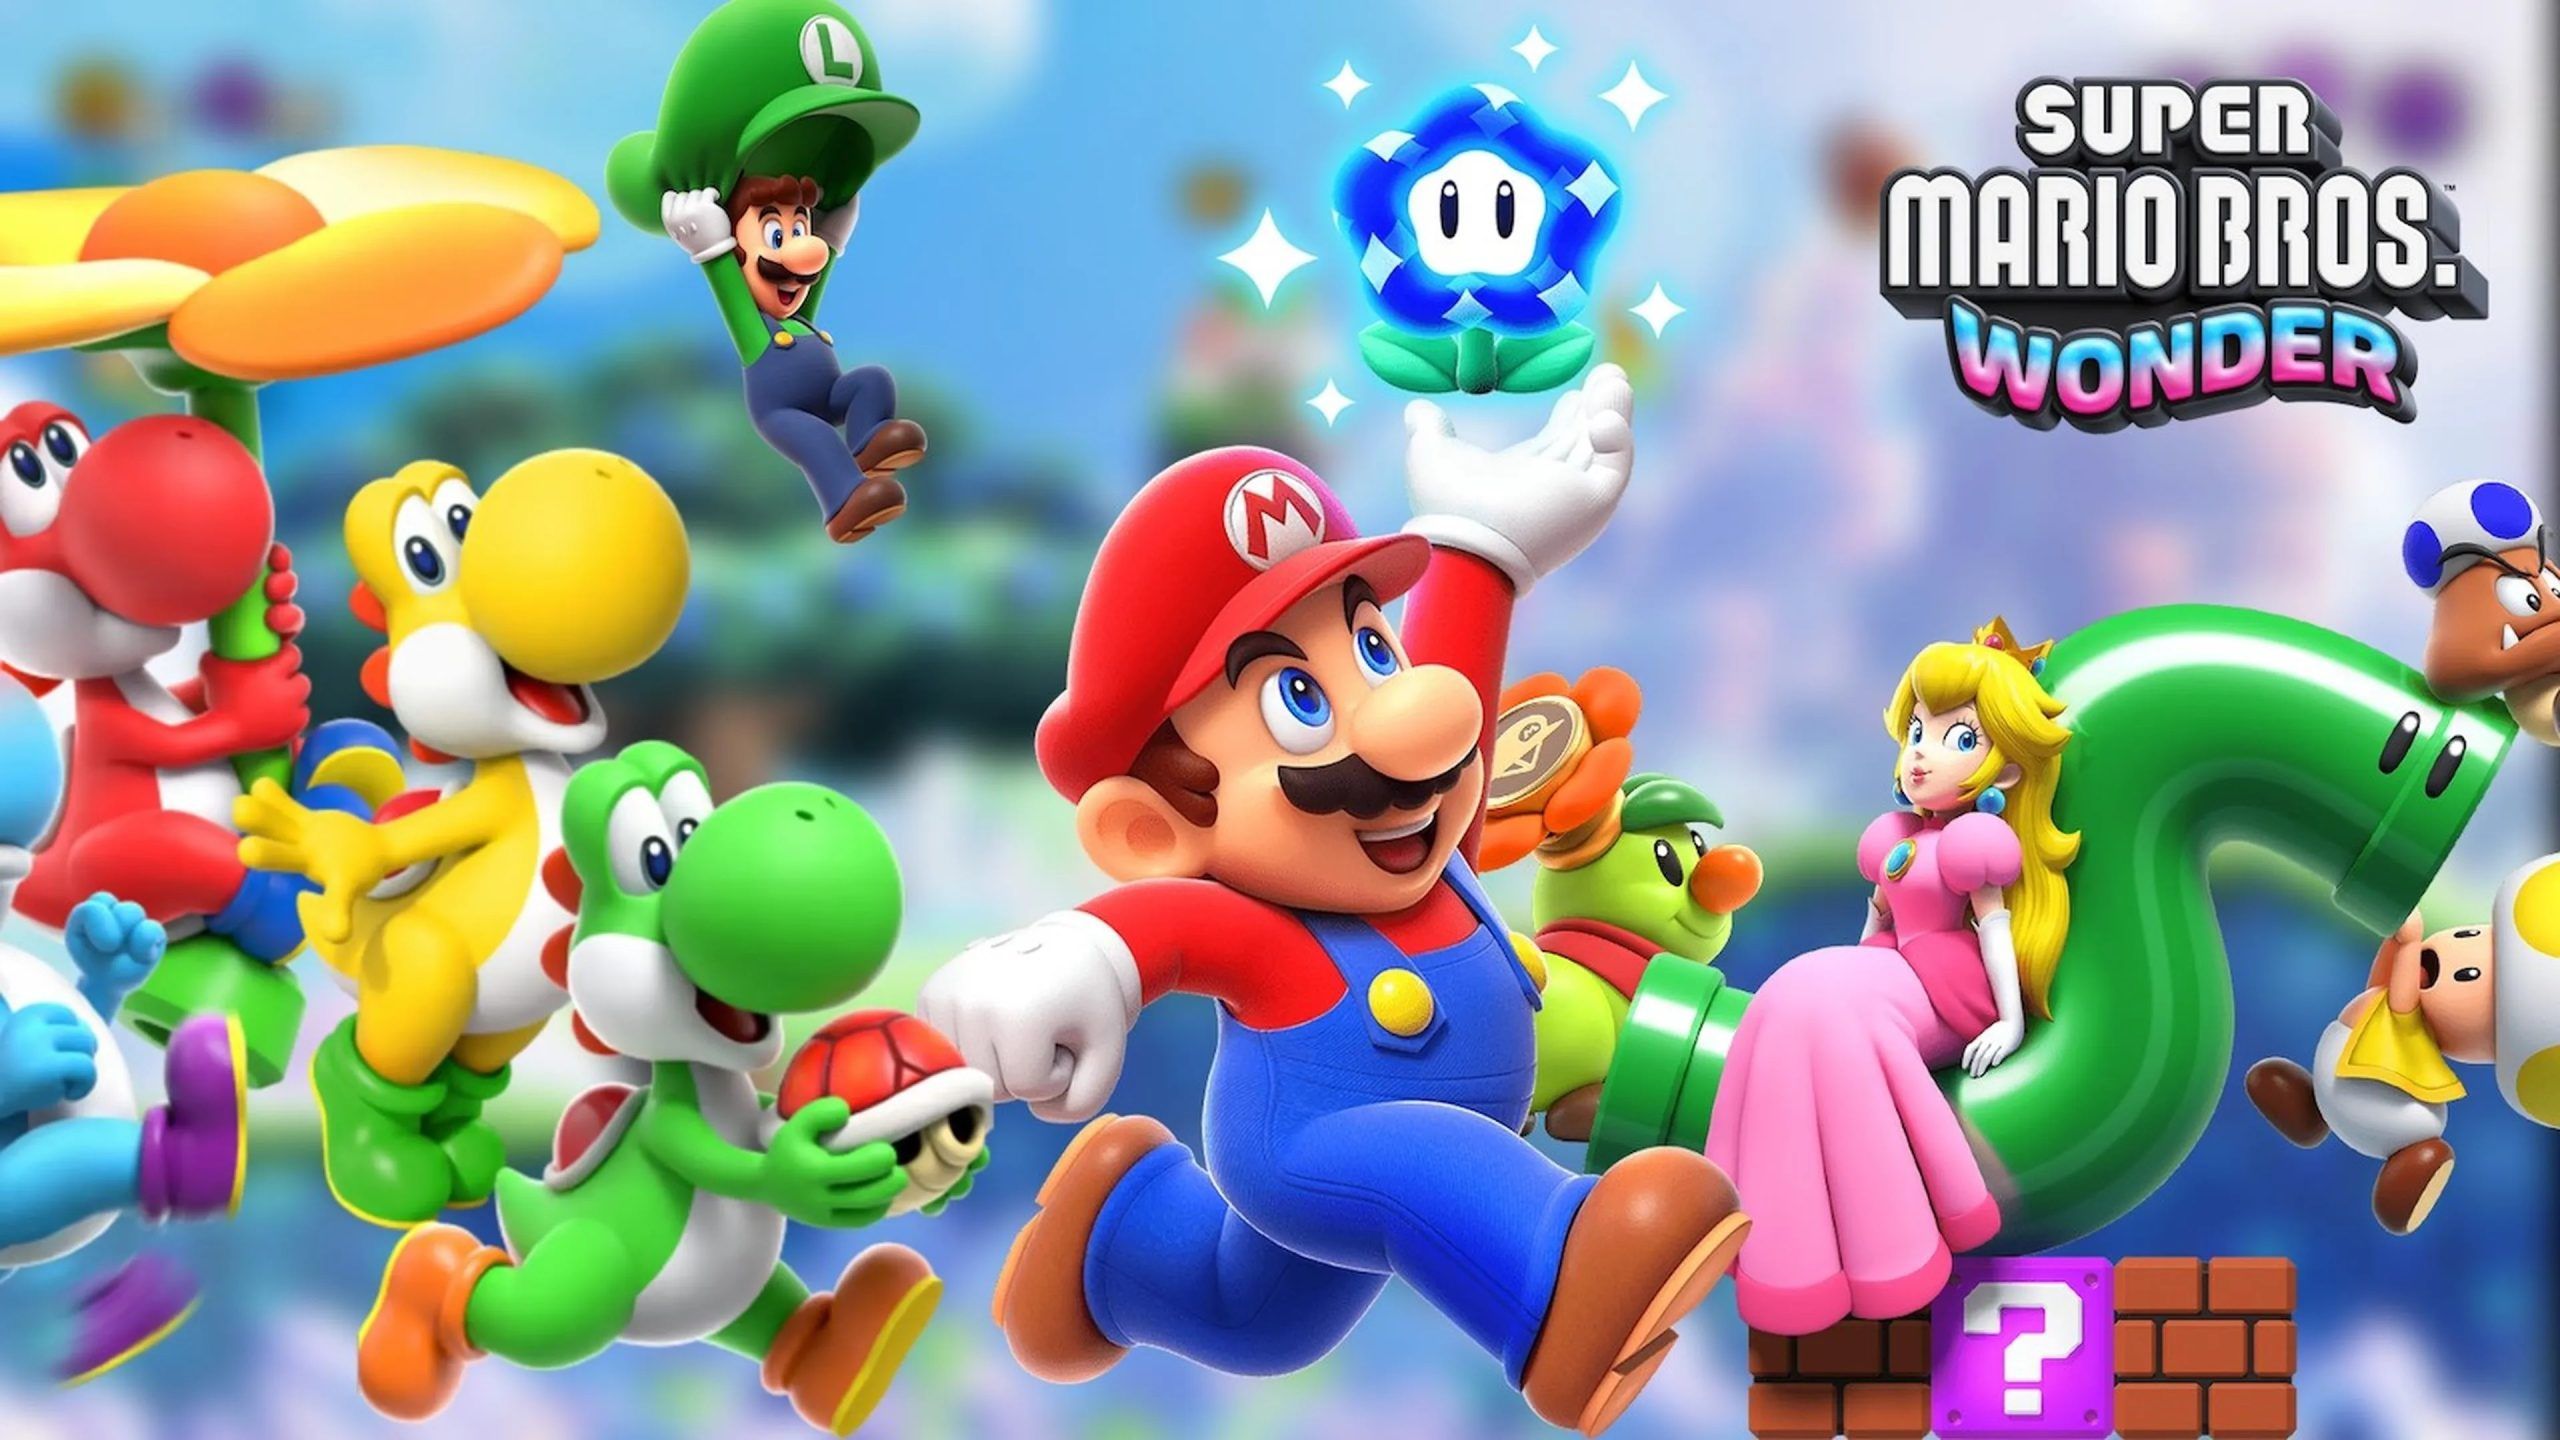 Promotieafbeelding voor Super Mario Bros. Wonder met o.a. Super Mario, Peach en Yoshi die achter een Wonderbloem aan rennen